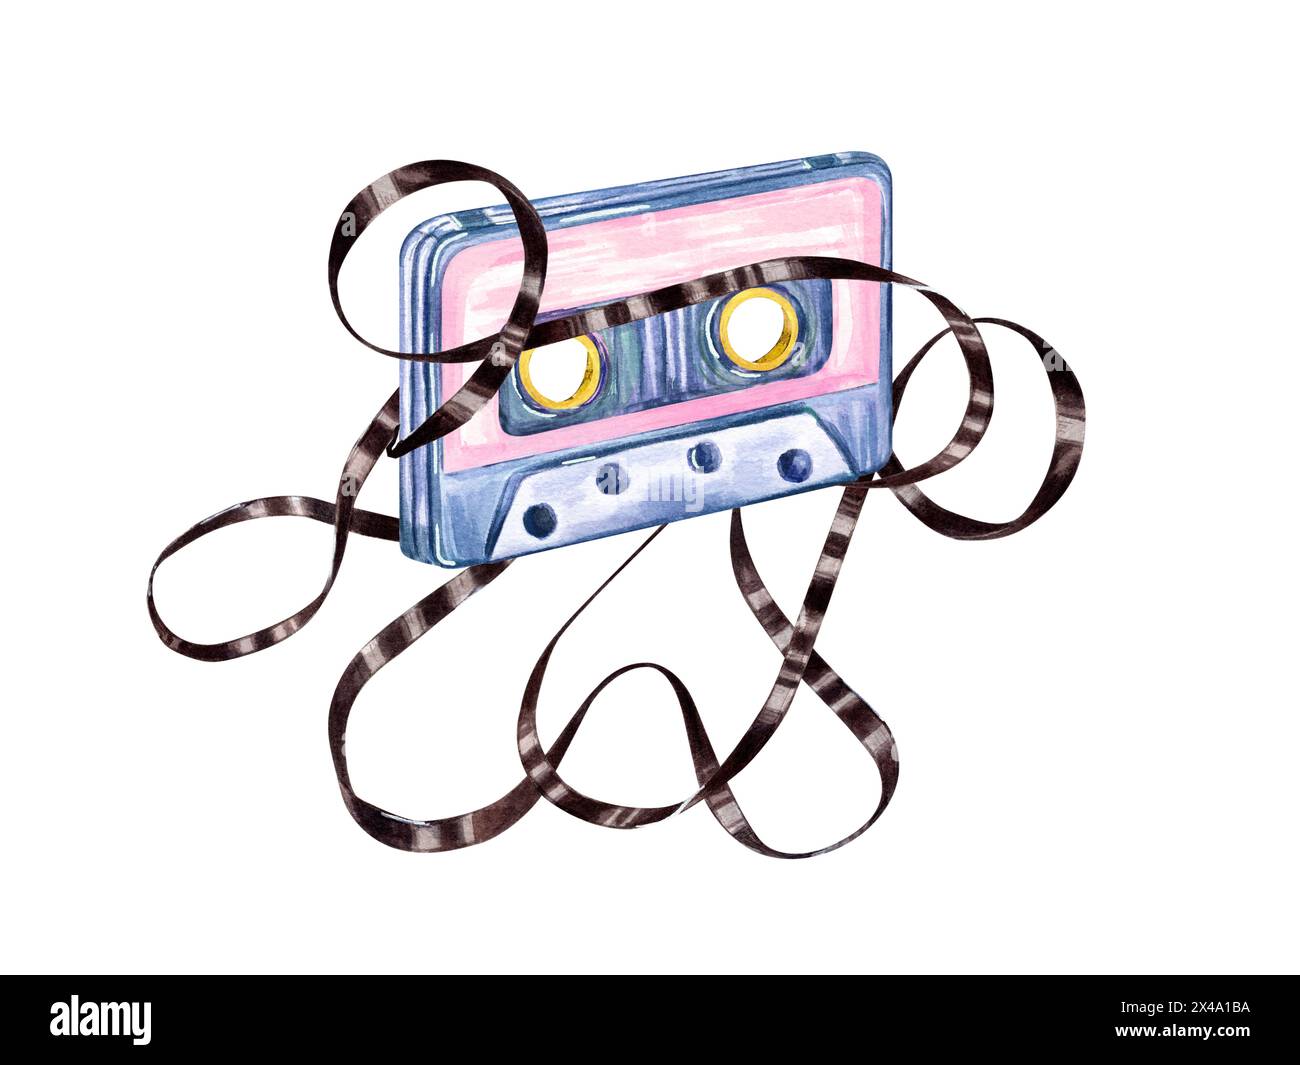 Alte Audiokassette mit verworrenen Bändern. Retro-Audio-Kassetten im Nostalgie-Stil. Braunes Magnetband. Kompakte Vintage-Kassette mit mehrfarbigem Sound. Stockfoto